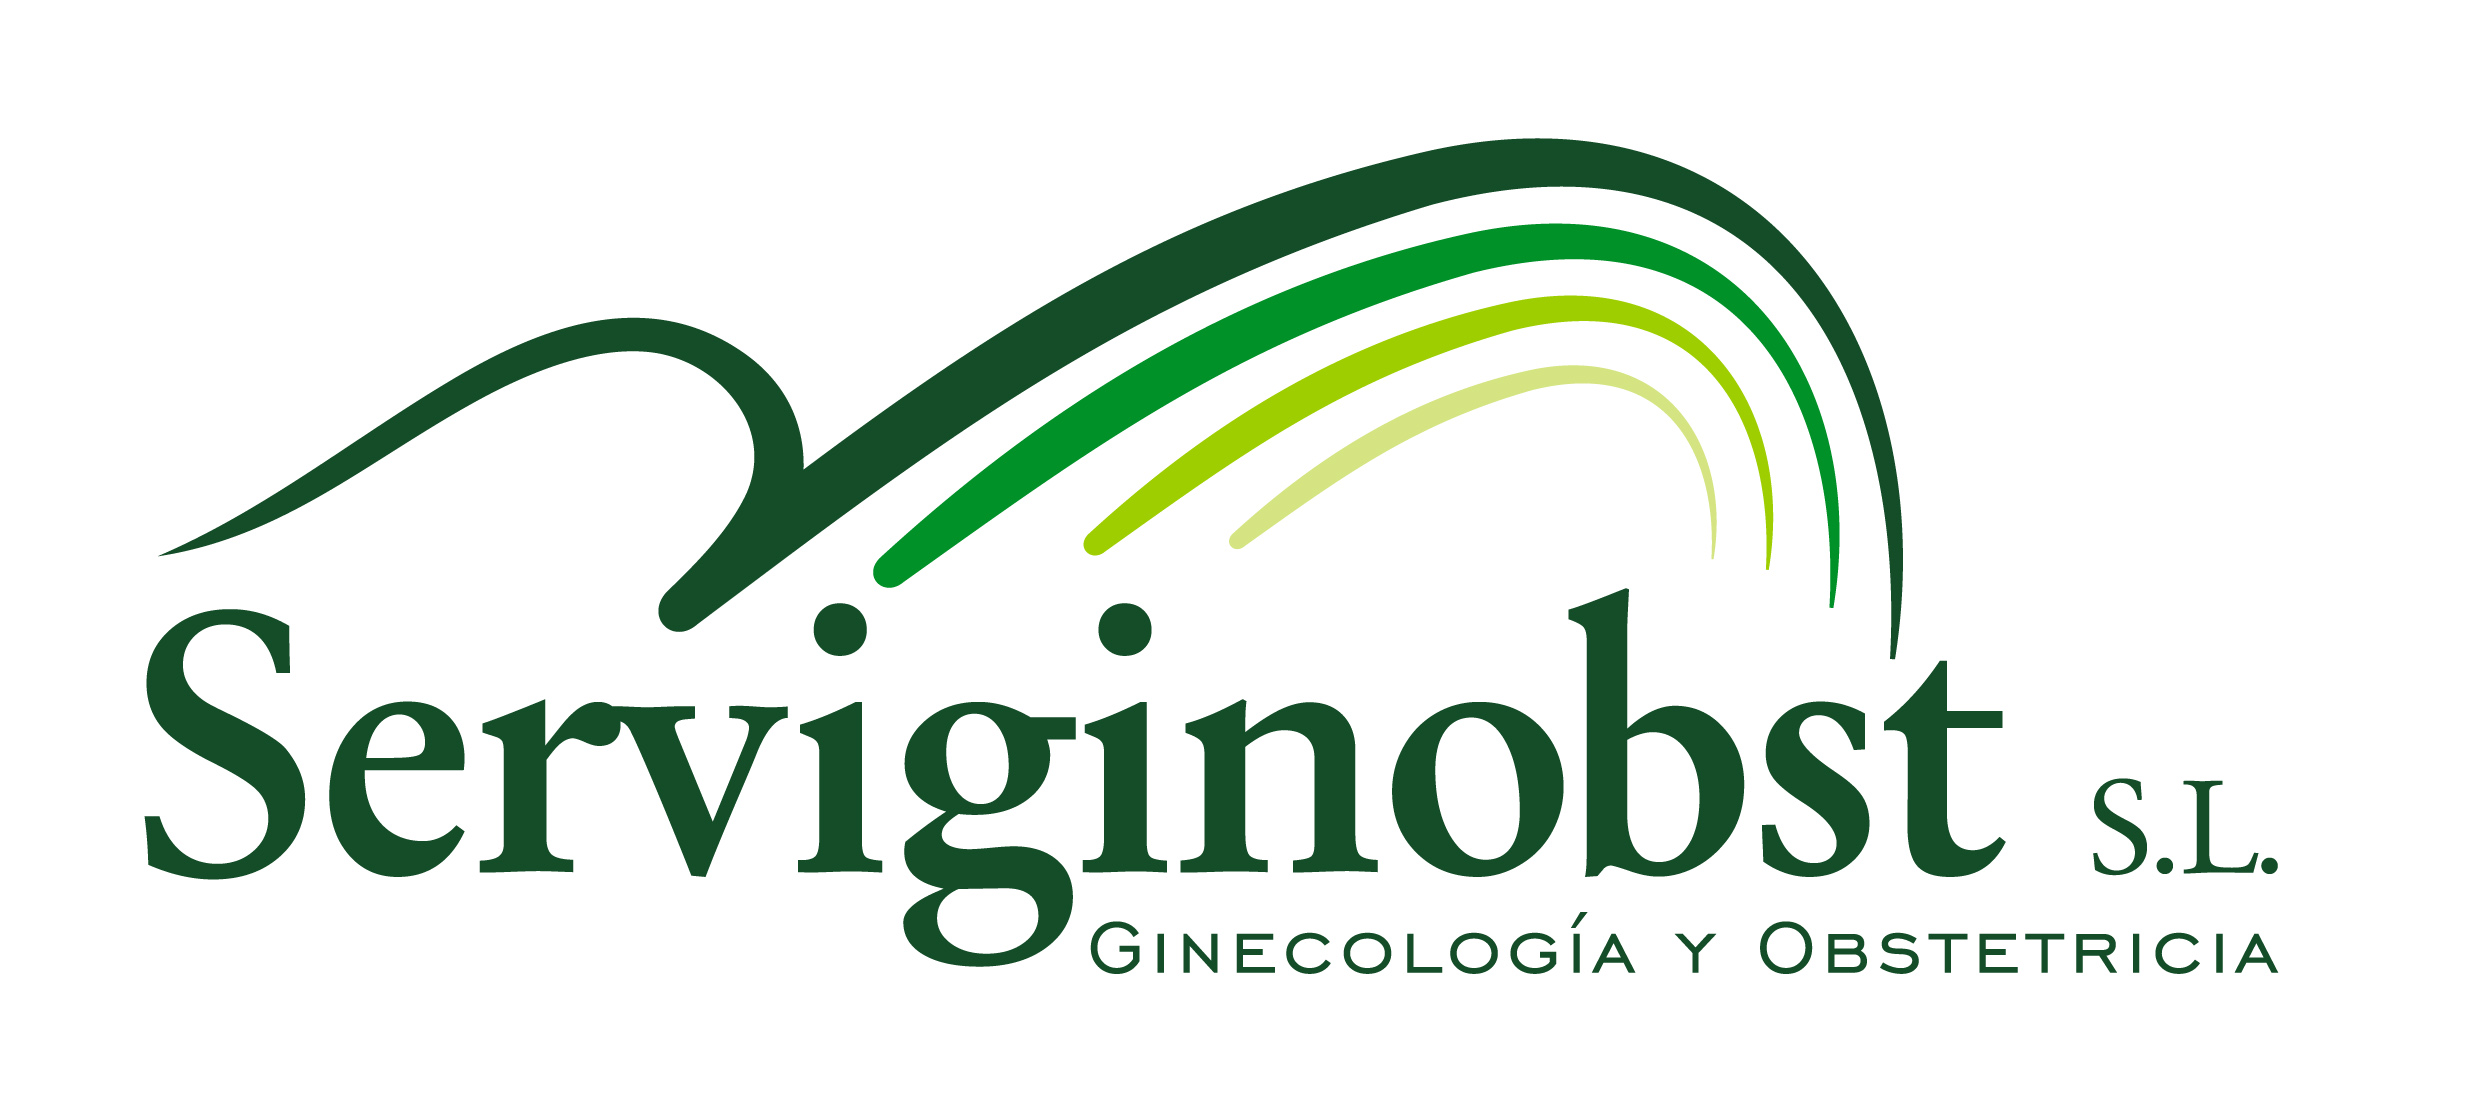 Logotipo de la clínica Serviginobst - Ginecología y Obstetricia -